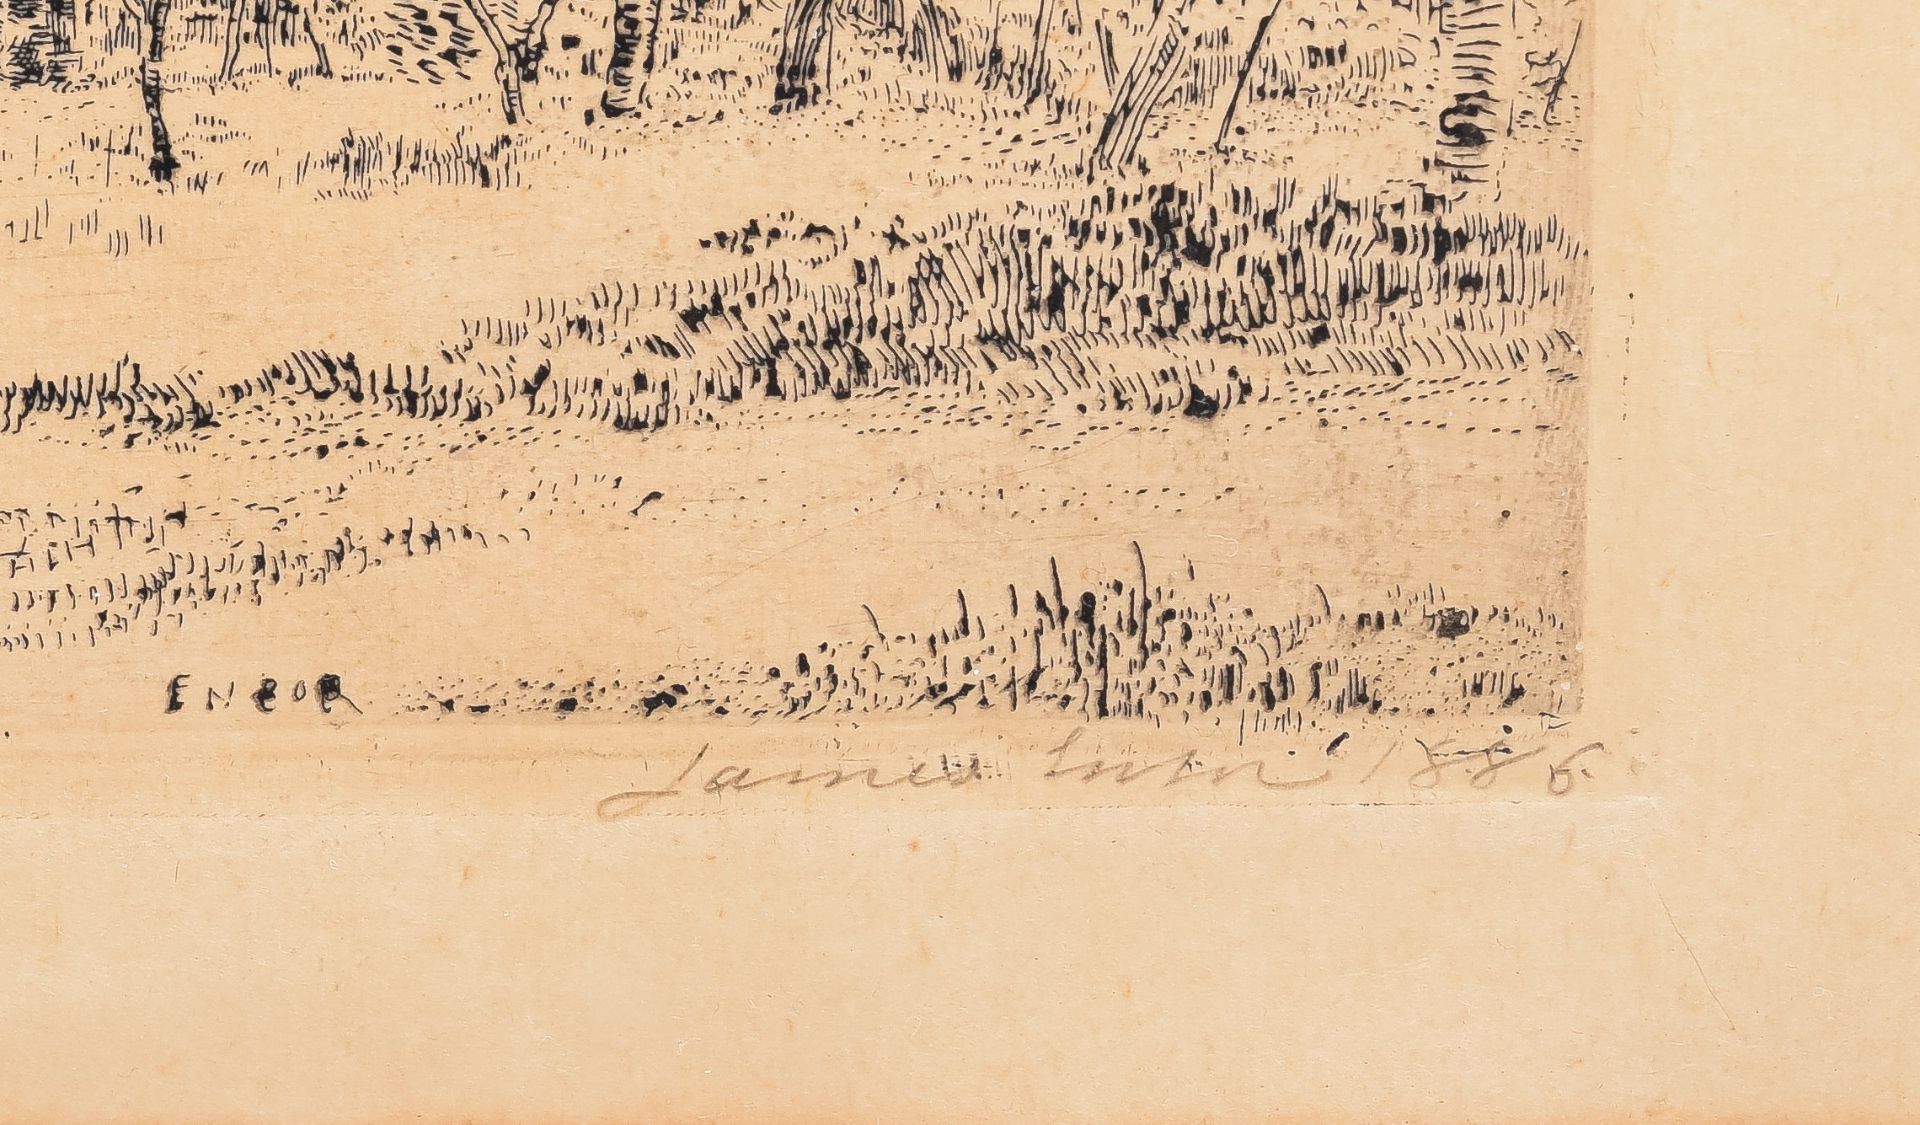 James Ensor (1860-1949), 'Le verger' (The Orchard), 1886, etching on Simili Japon, 160 x 240 mm - Bild 4 aus 4